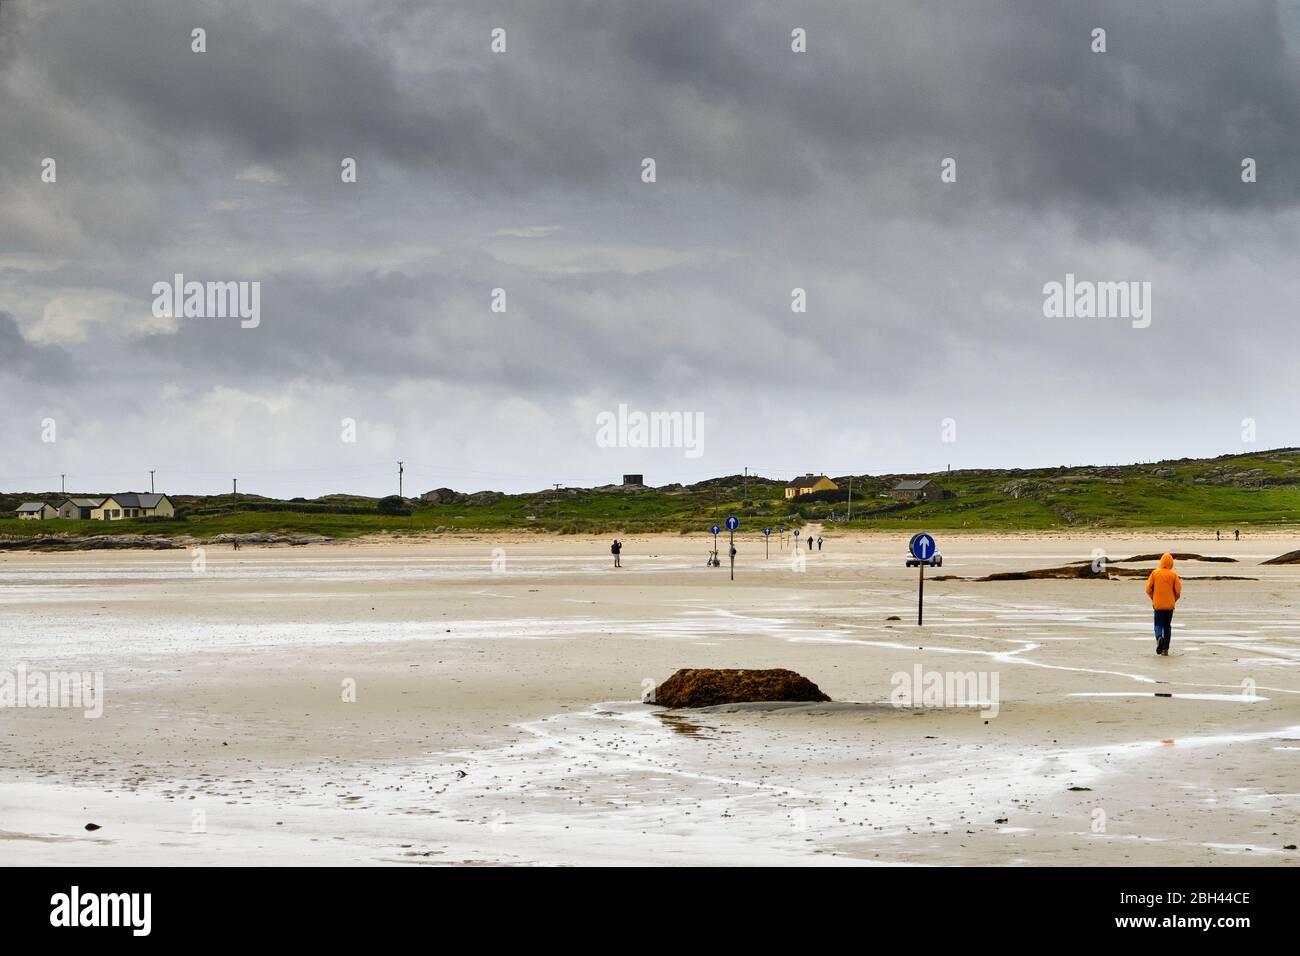 Il grande tratto di sabbia per raggiungere l'isola di Omey seguendo le indicazioni della freccia. L'isola di Omey è un'isola di marea situata vicino a Claddaghduff sulla ed occidentale Foto Stock